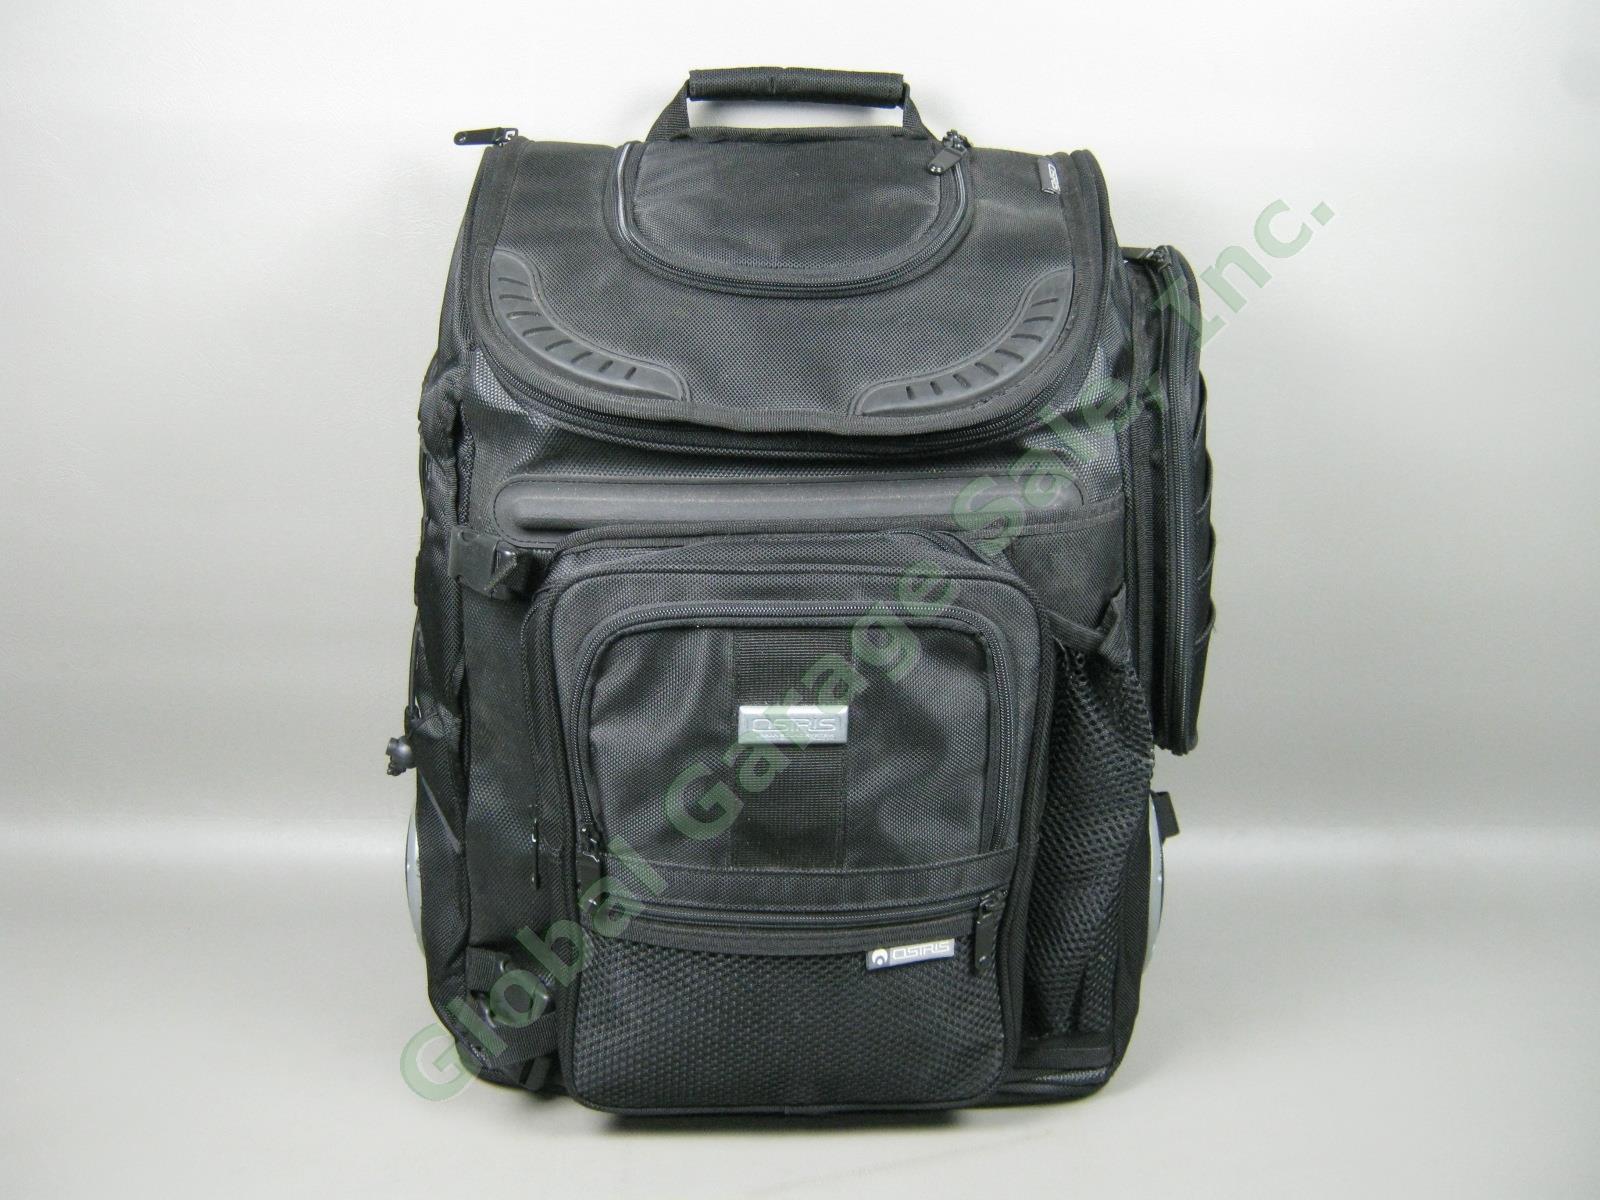 NOS Osiris G-Bag Metatron 2100 Backpack Skate Pack w/ Stereo Speakers + Amp NR! 1